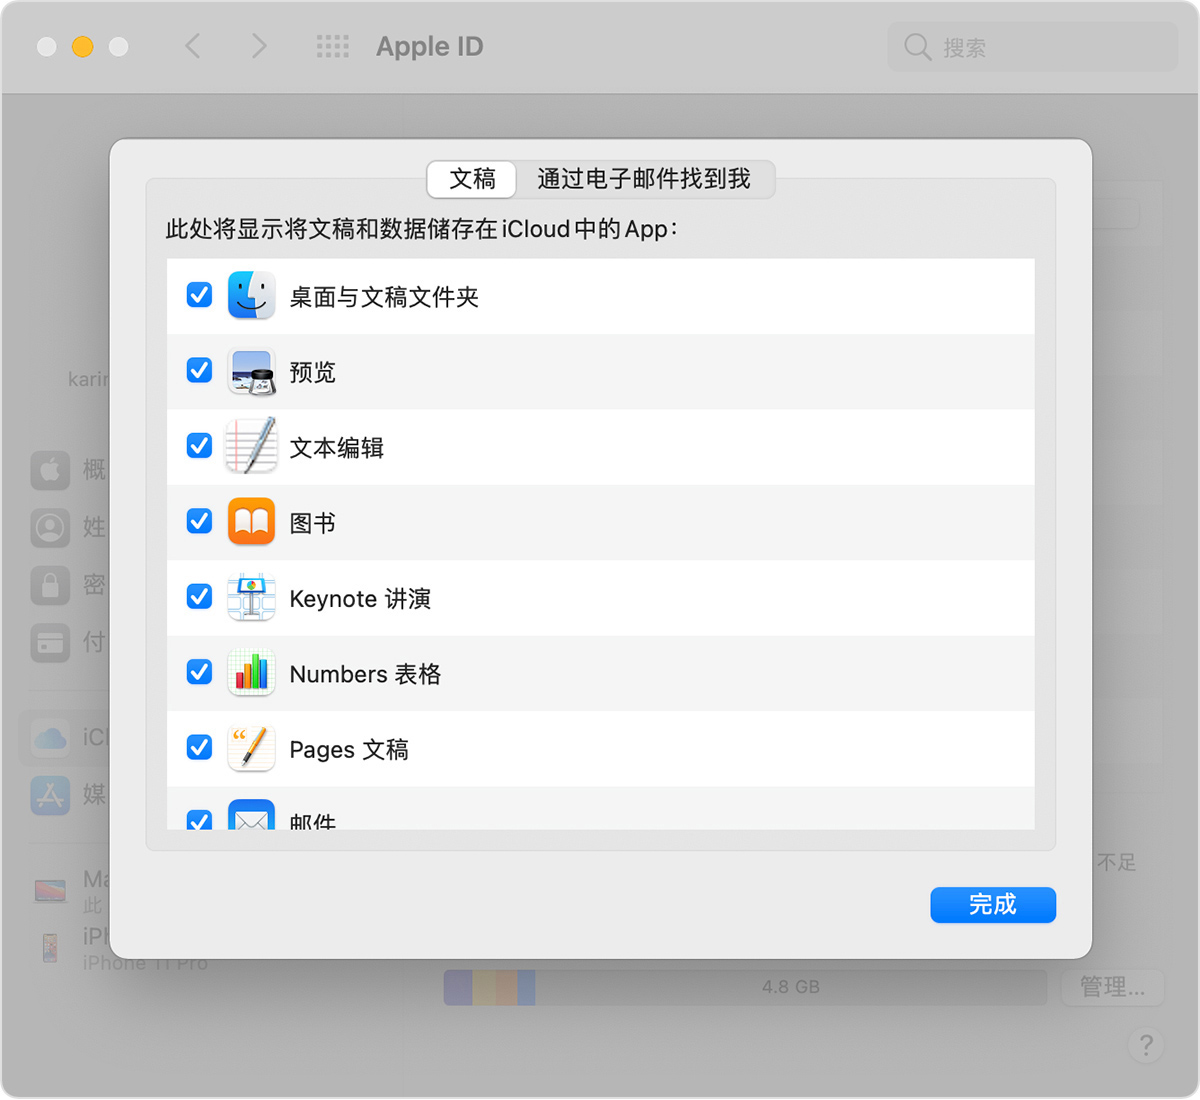 Mac 上的 iCloud 云盘选项屏幕，其中显示了选中的“桌面与文稿文件夹”选项。